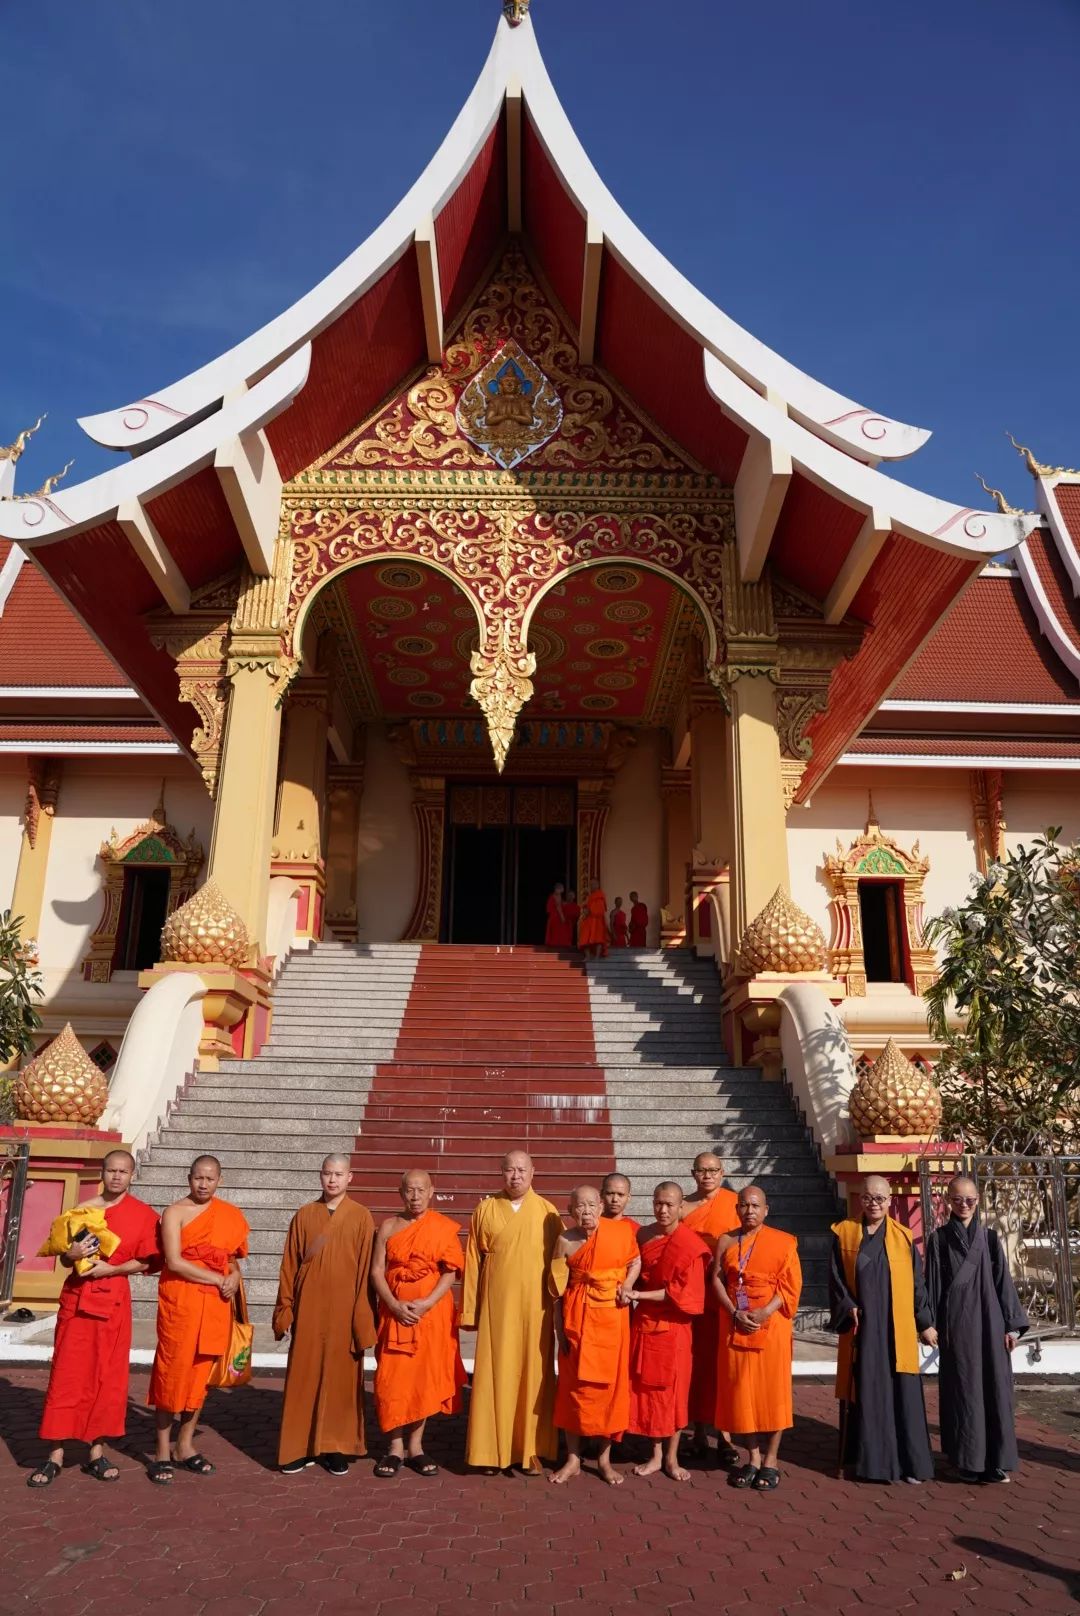 携手共创中老佛教交流新篇章 ——印顺大和尚与老挝佛教及政府负责人会谈